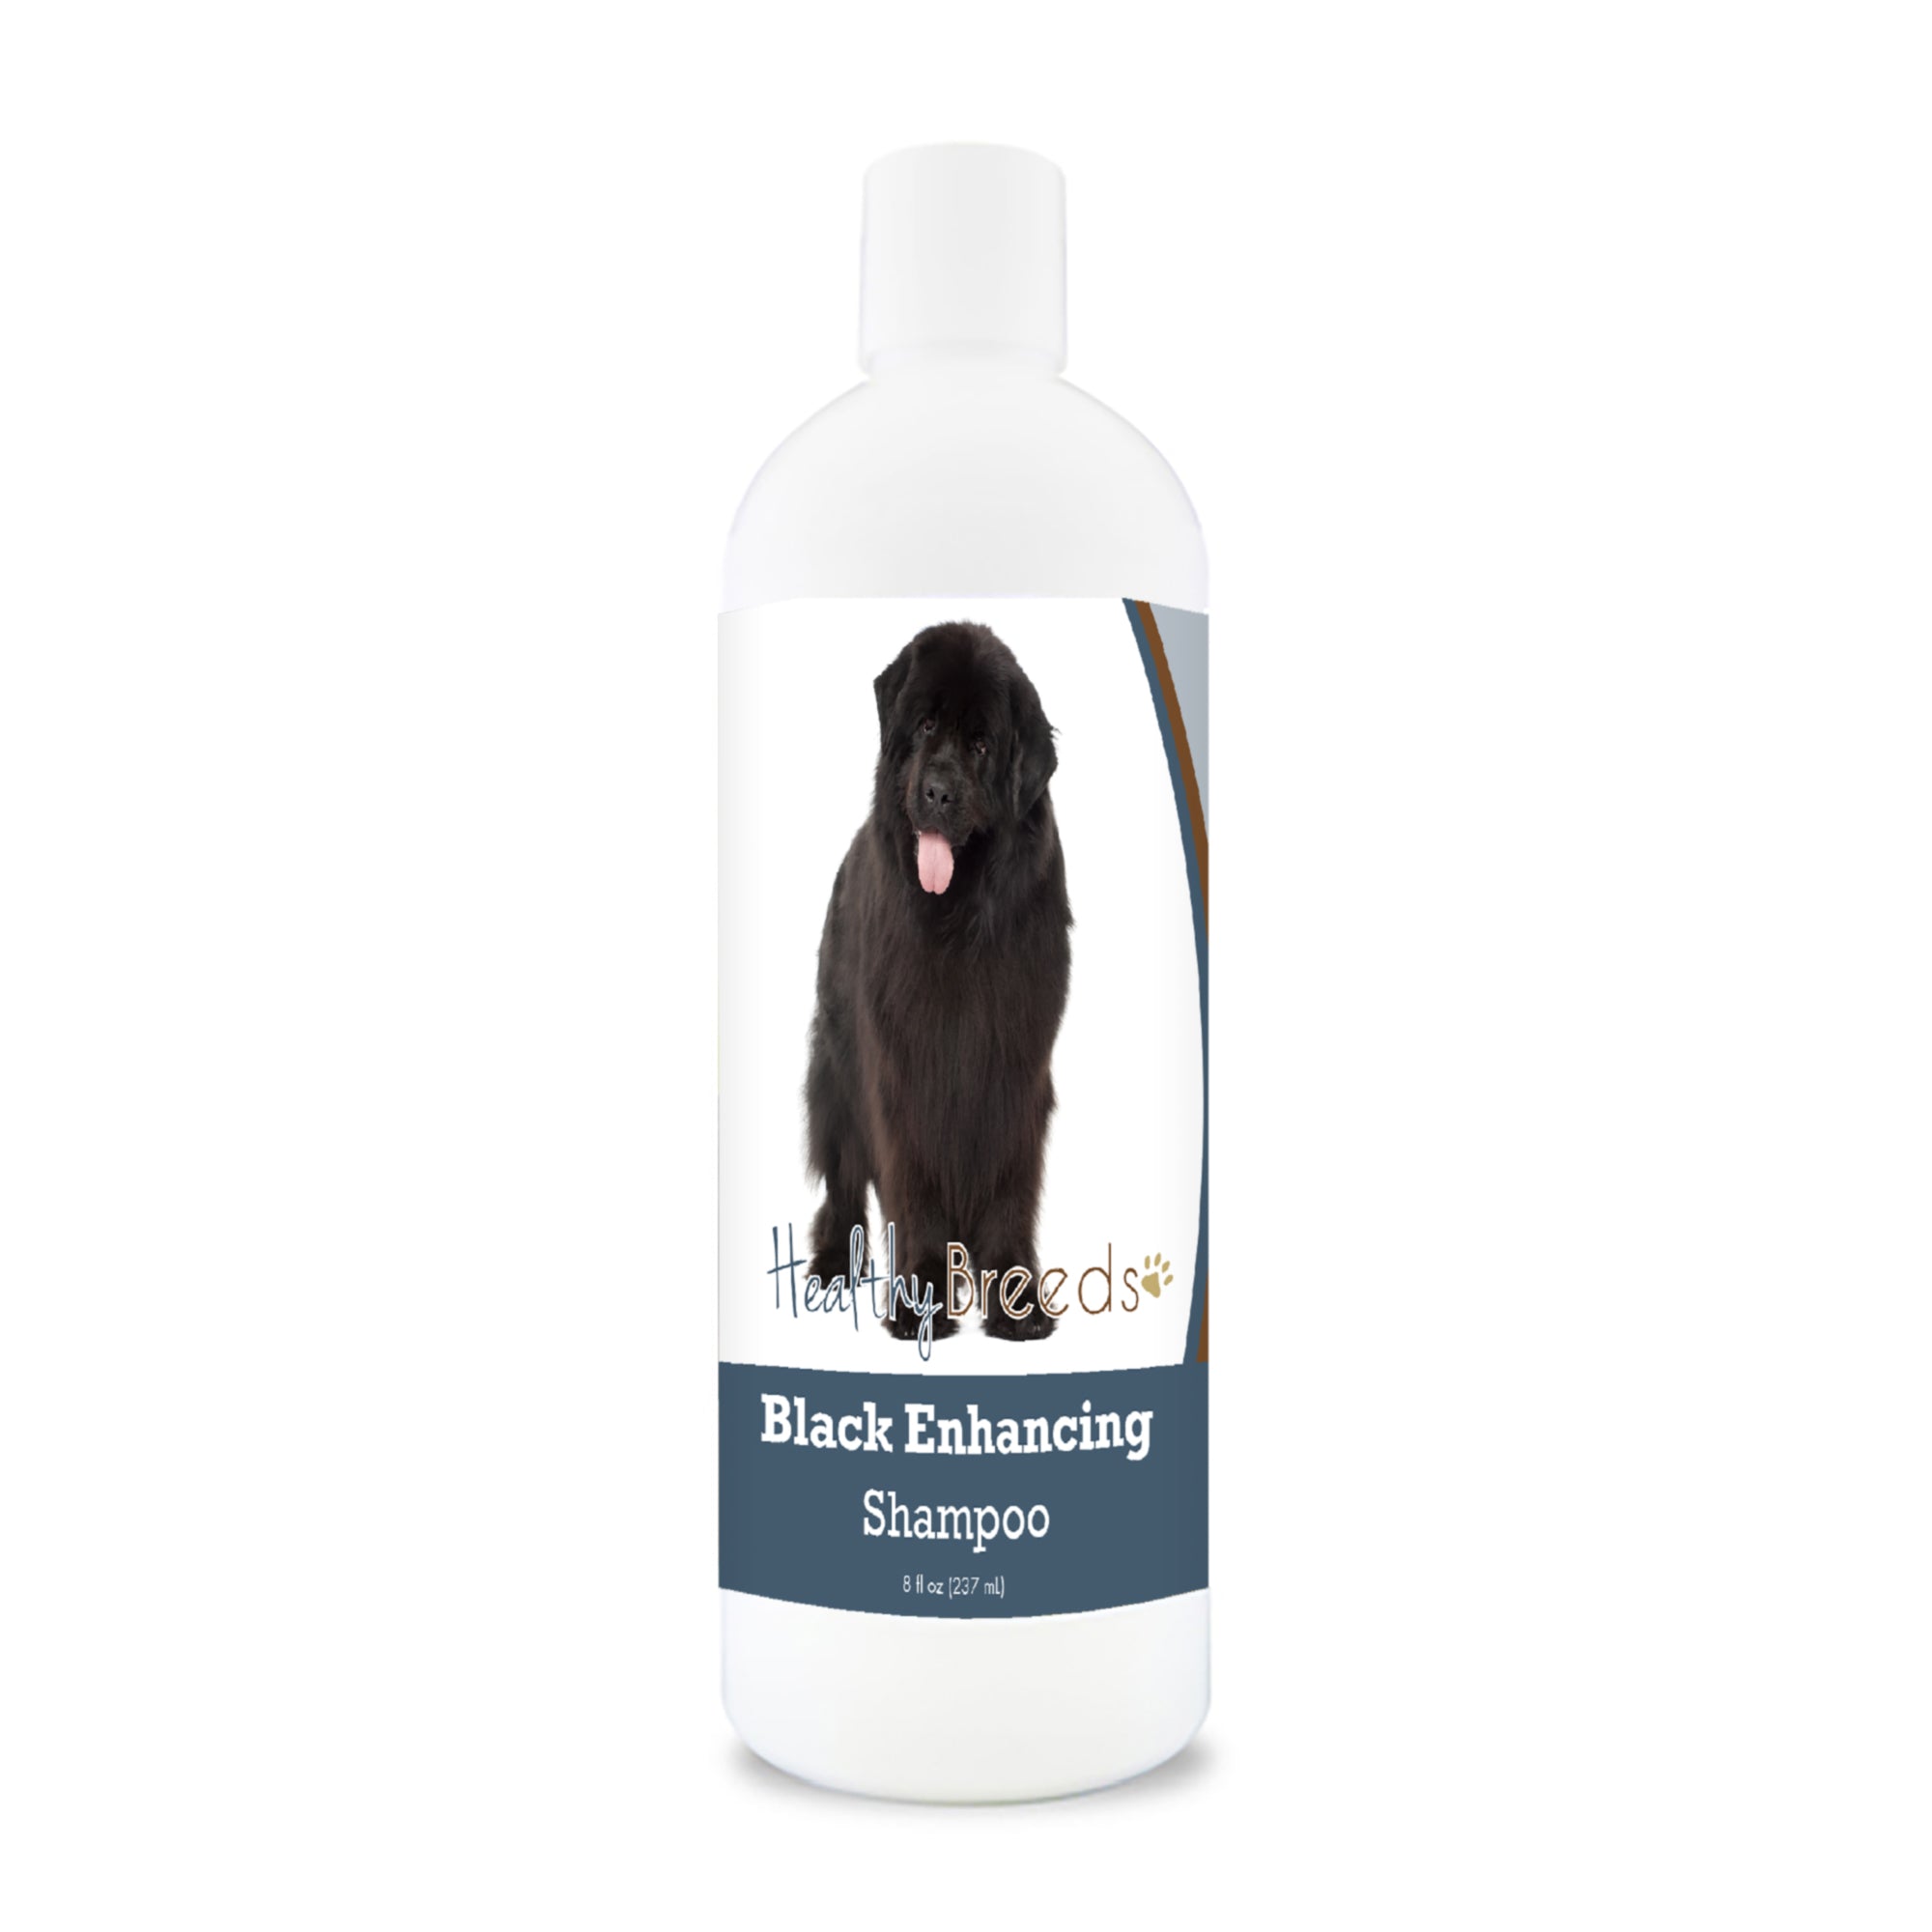 Newfoundland Black Enhancing Shampoo 8 oz